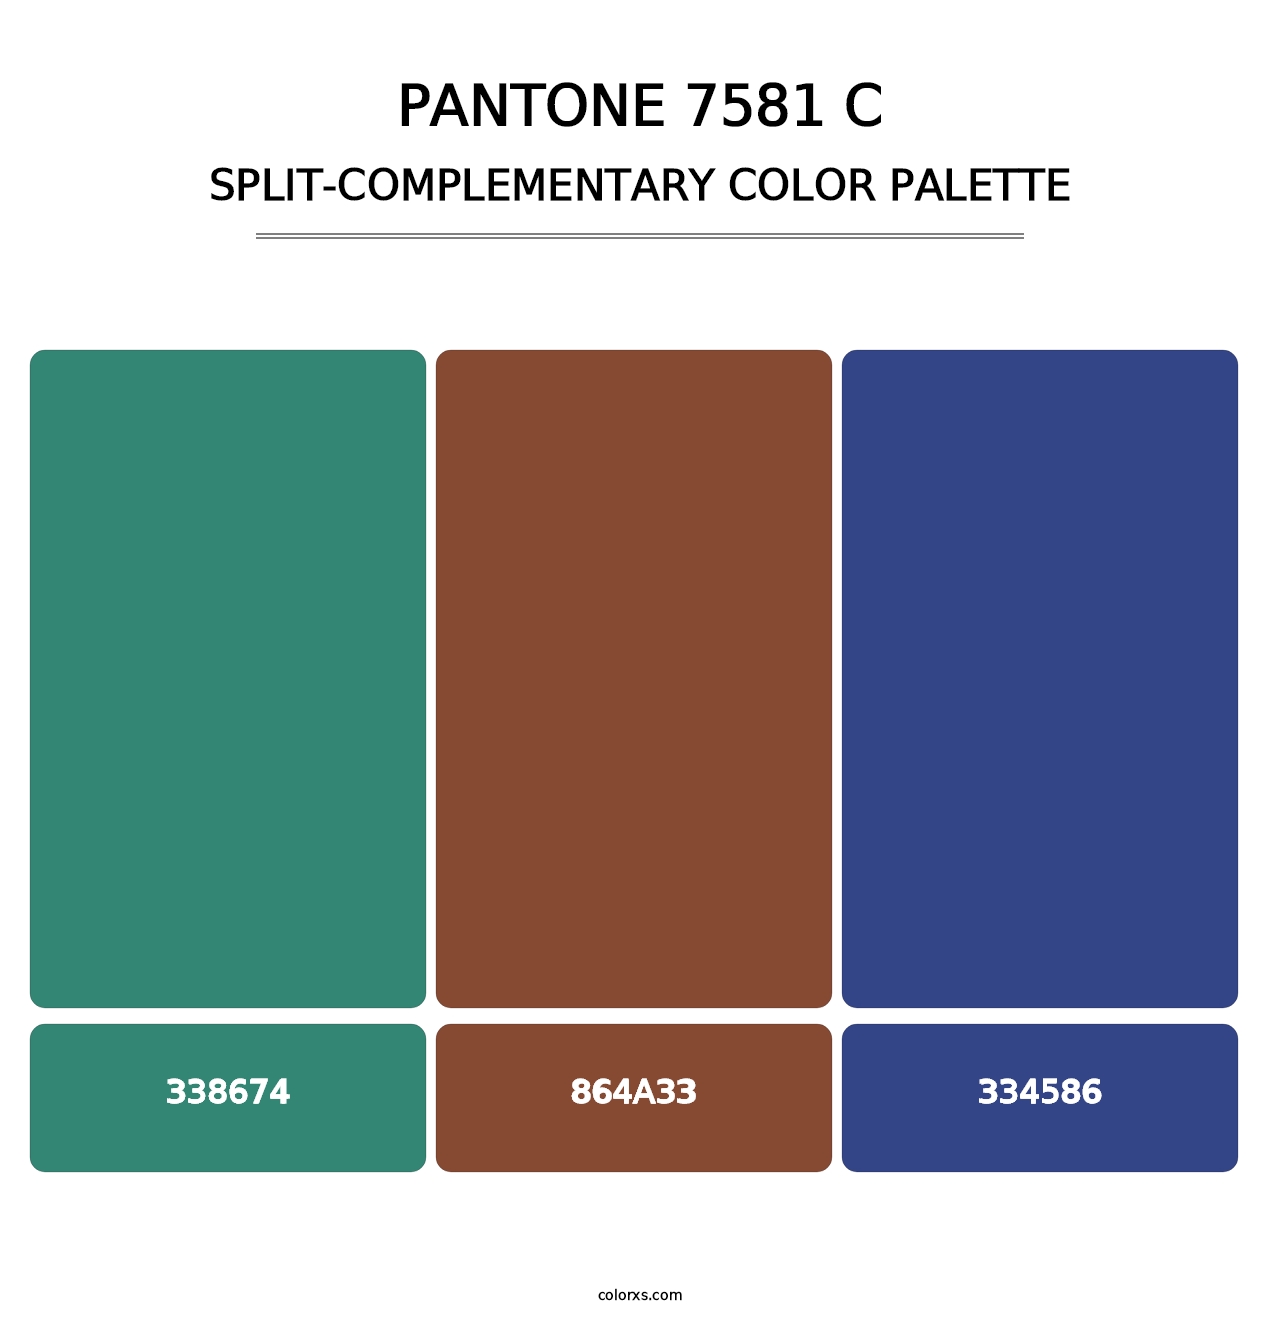 PANTONE 7581 C - Split-Complementary Color Palette